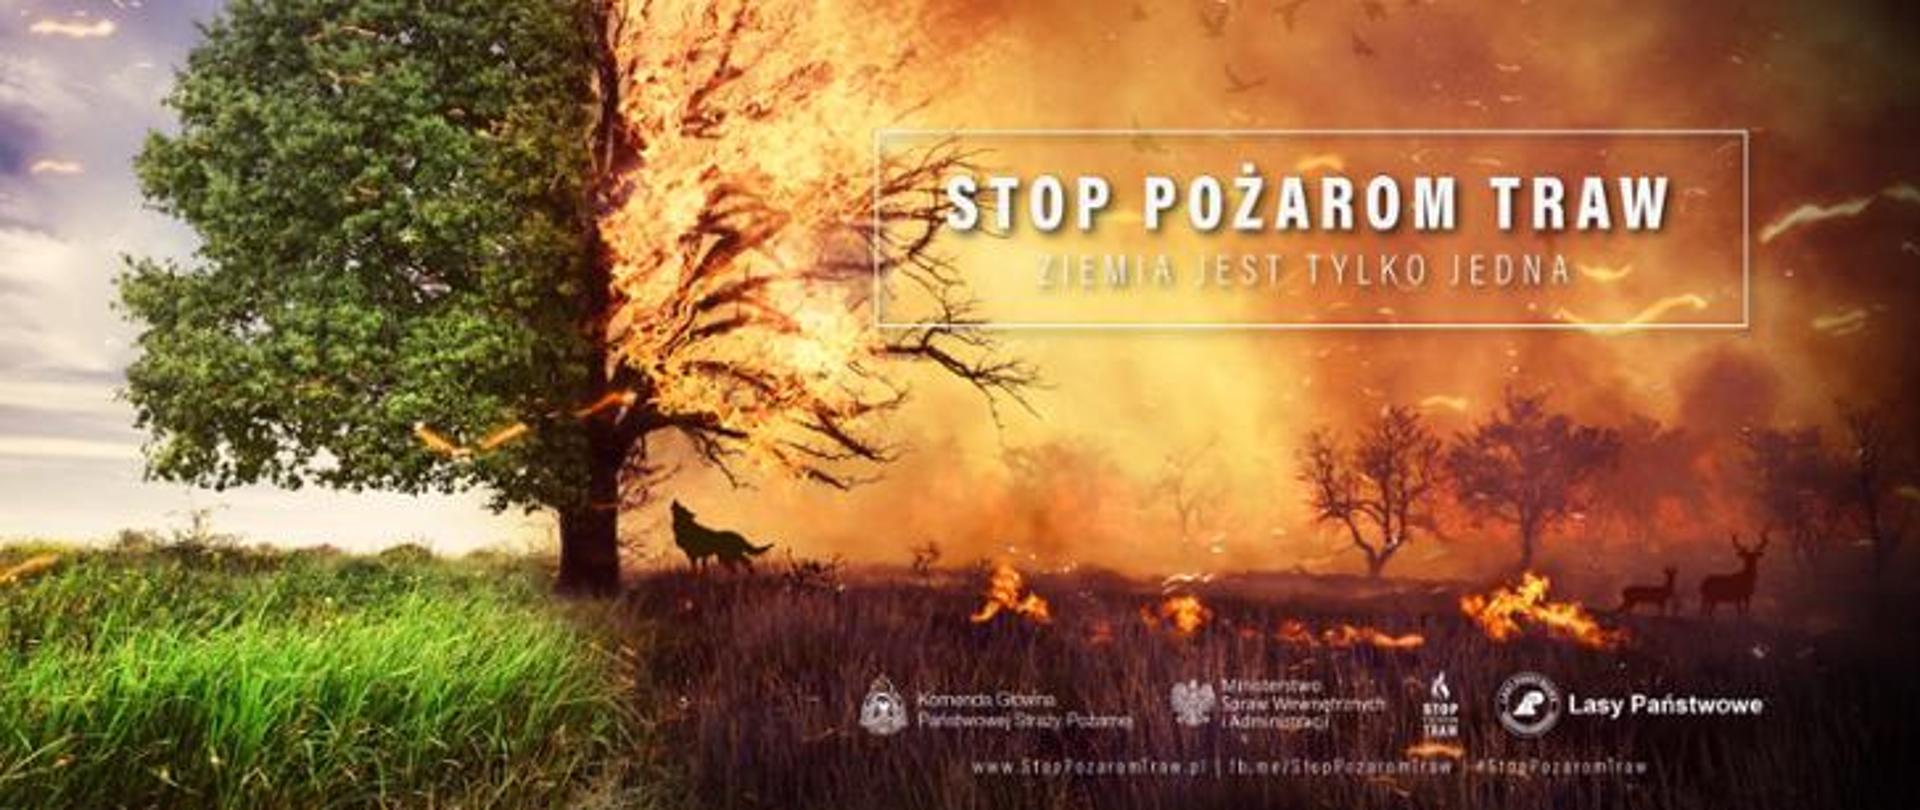 Zdjęcie przedstawia slogan kampanii stop pożarom traw na którym przedstawiono obraz przyrody w połowie spalonej a w drugiej połowie żywej.